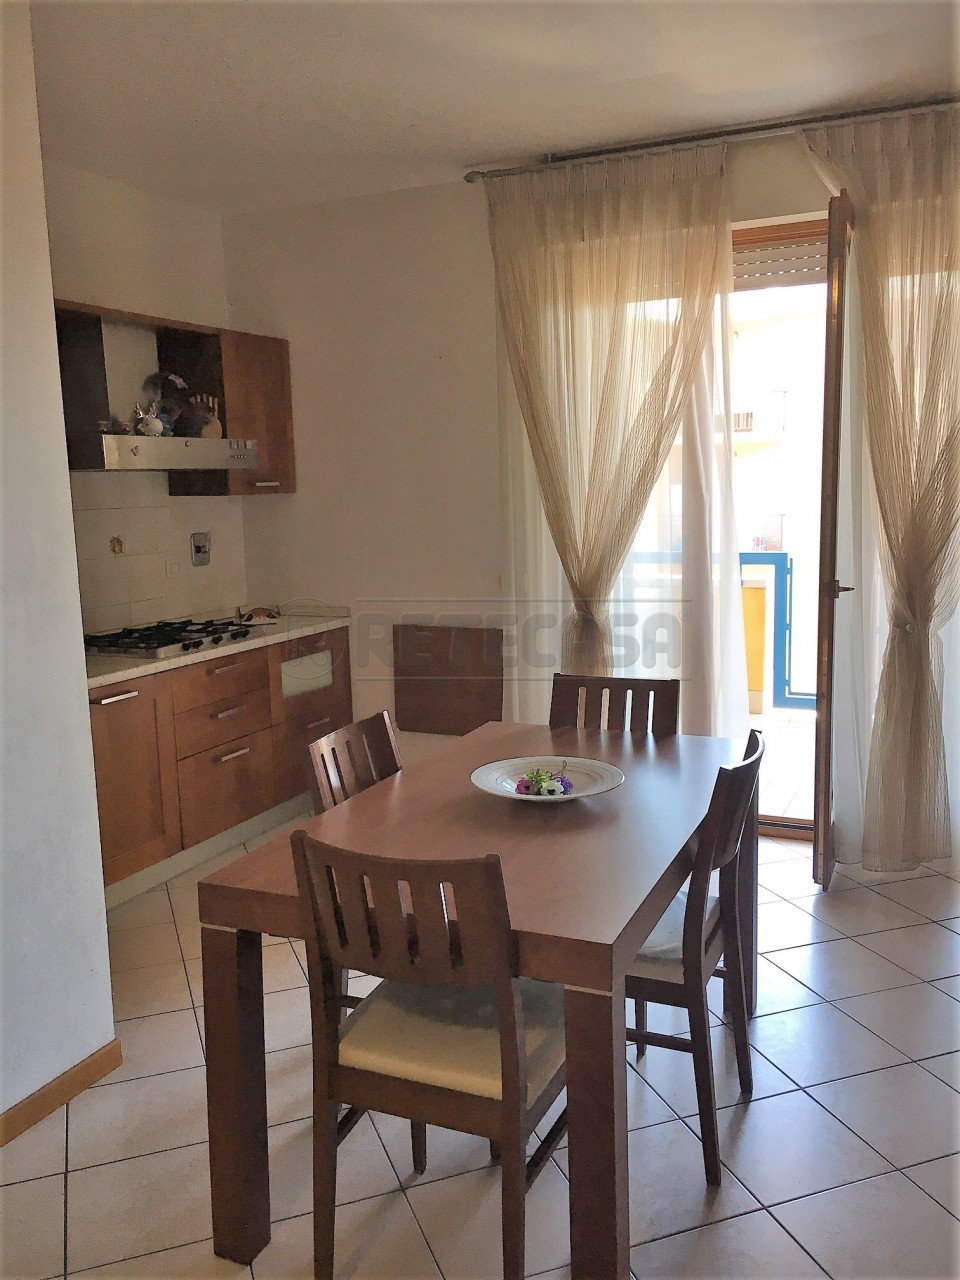 Appartamento in vendita a Corciano, 4 locali, prezzo € 154.000 | PortaleAgenzieImmobiliari.it